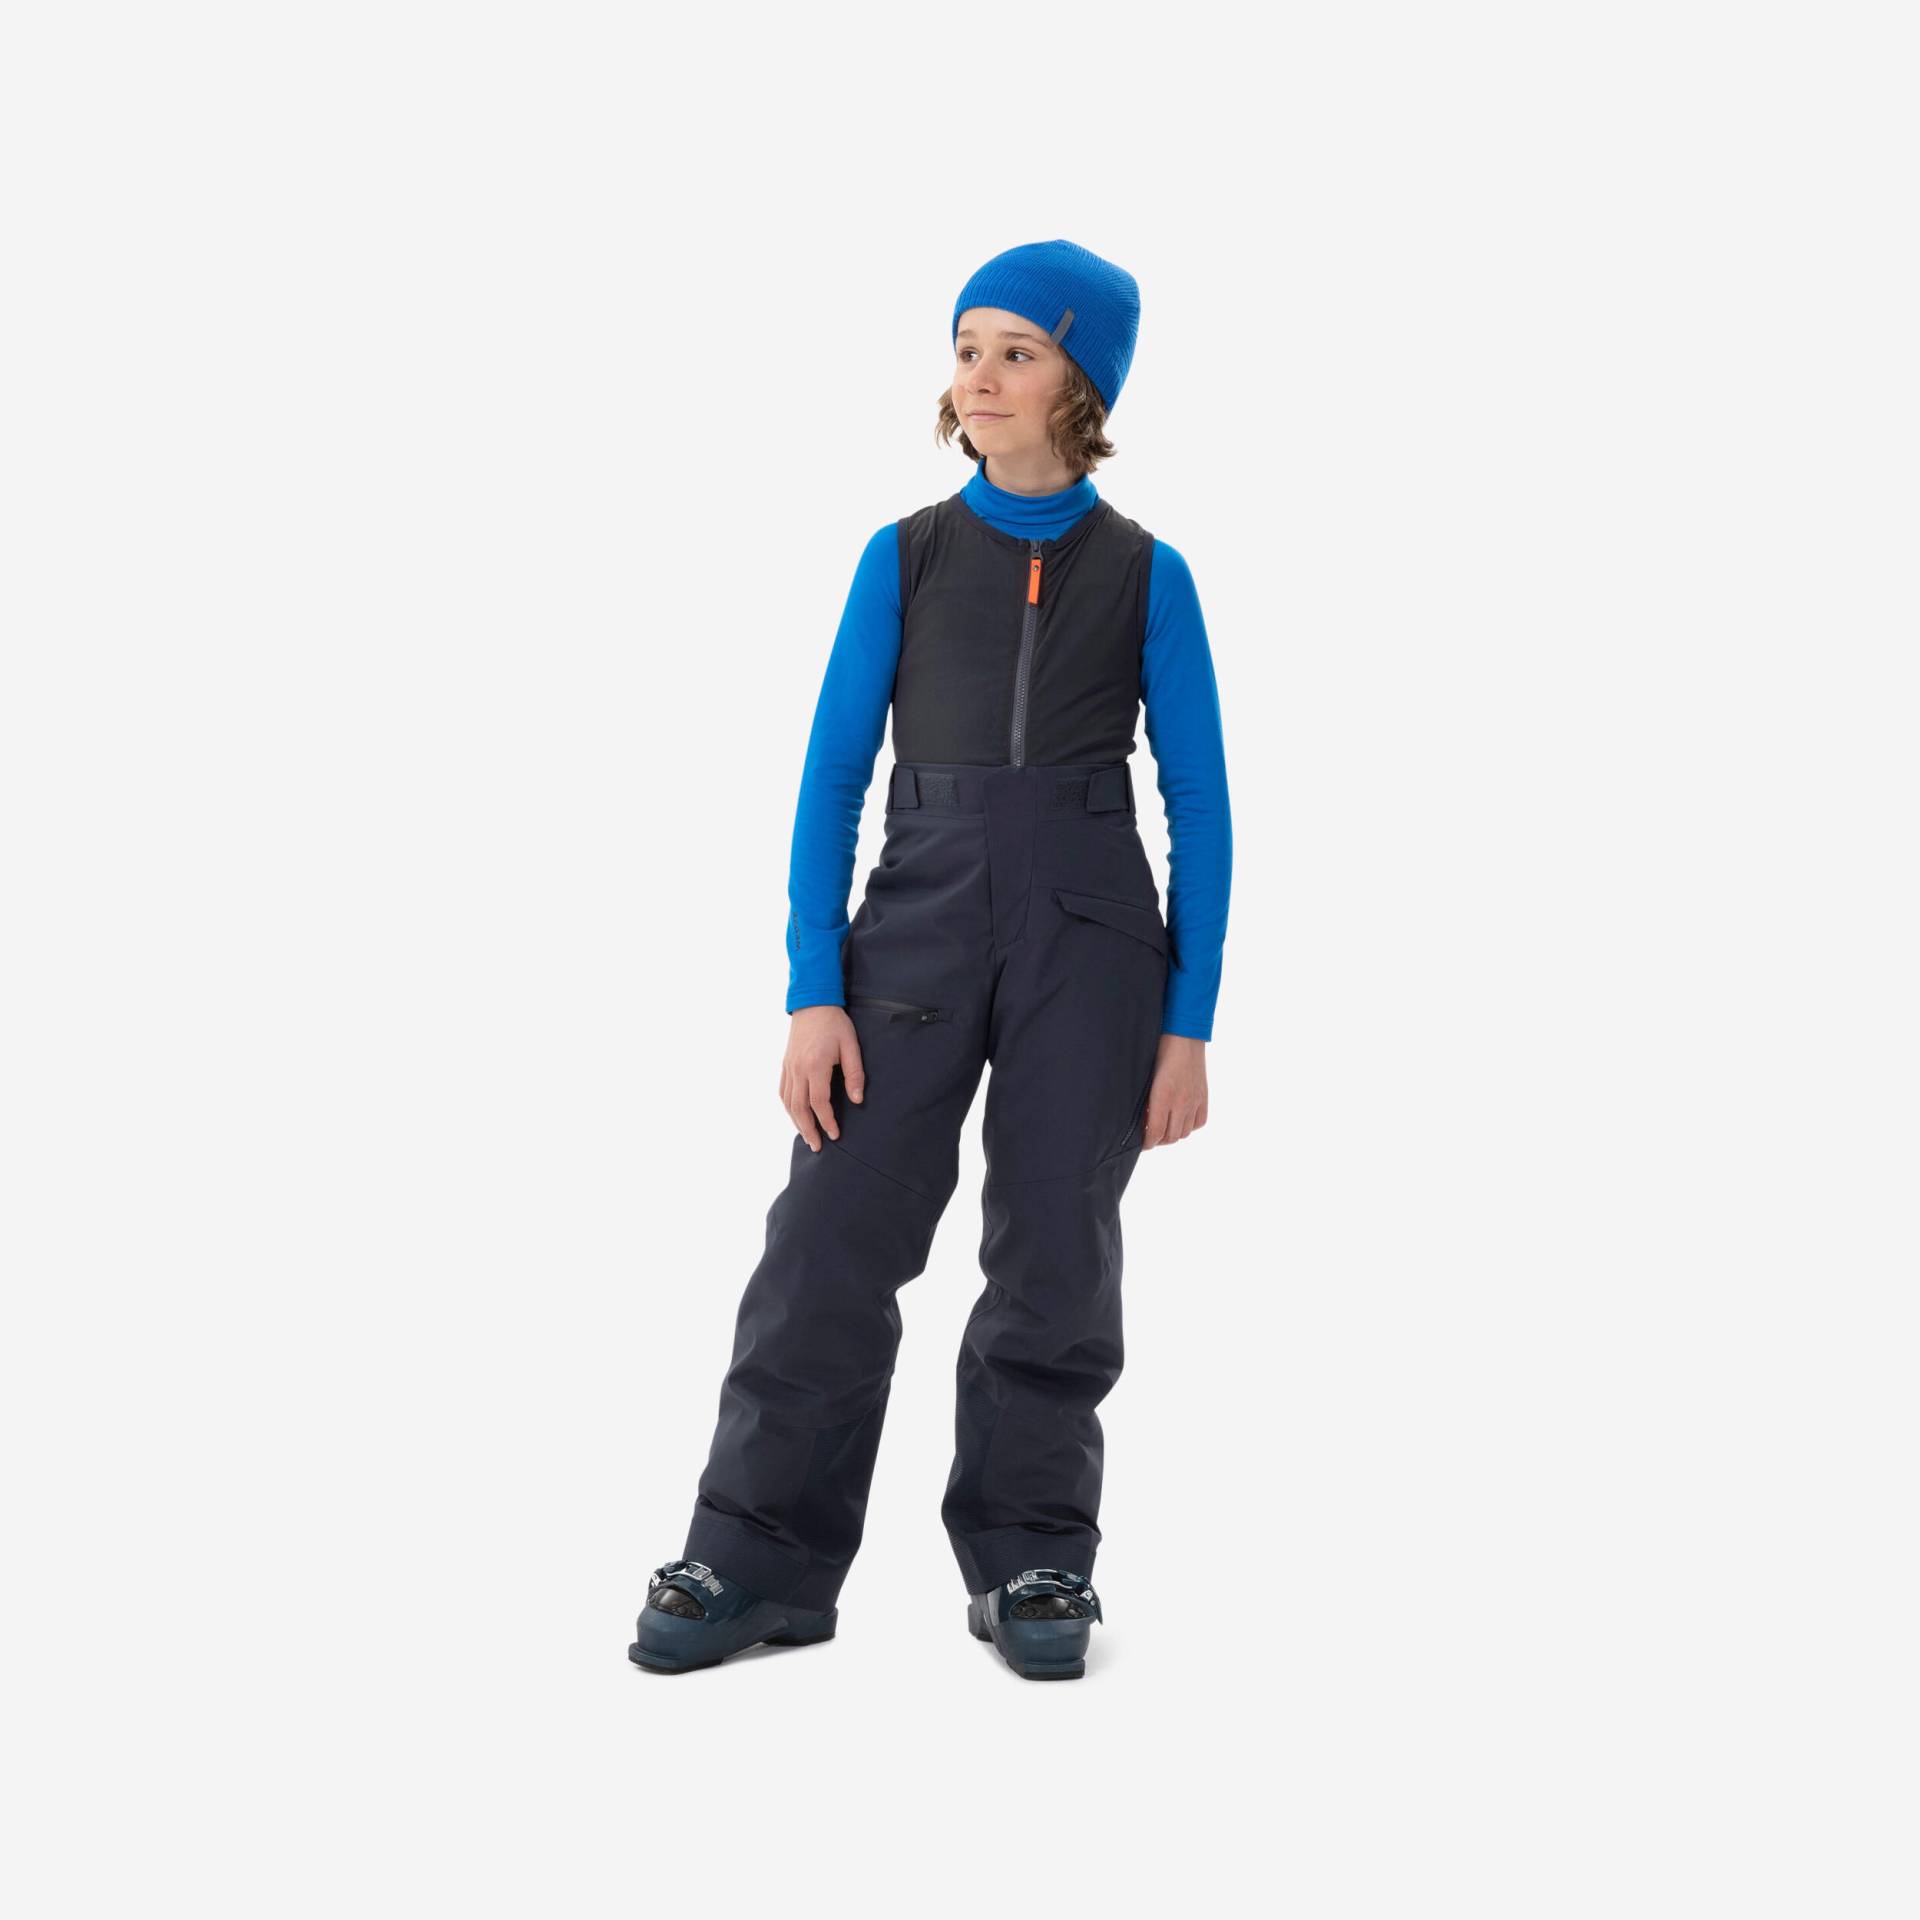 Skihose Kinder mit Rückenprotektor - FR900 marineblau von WEDZE